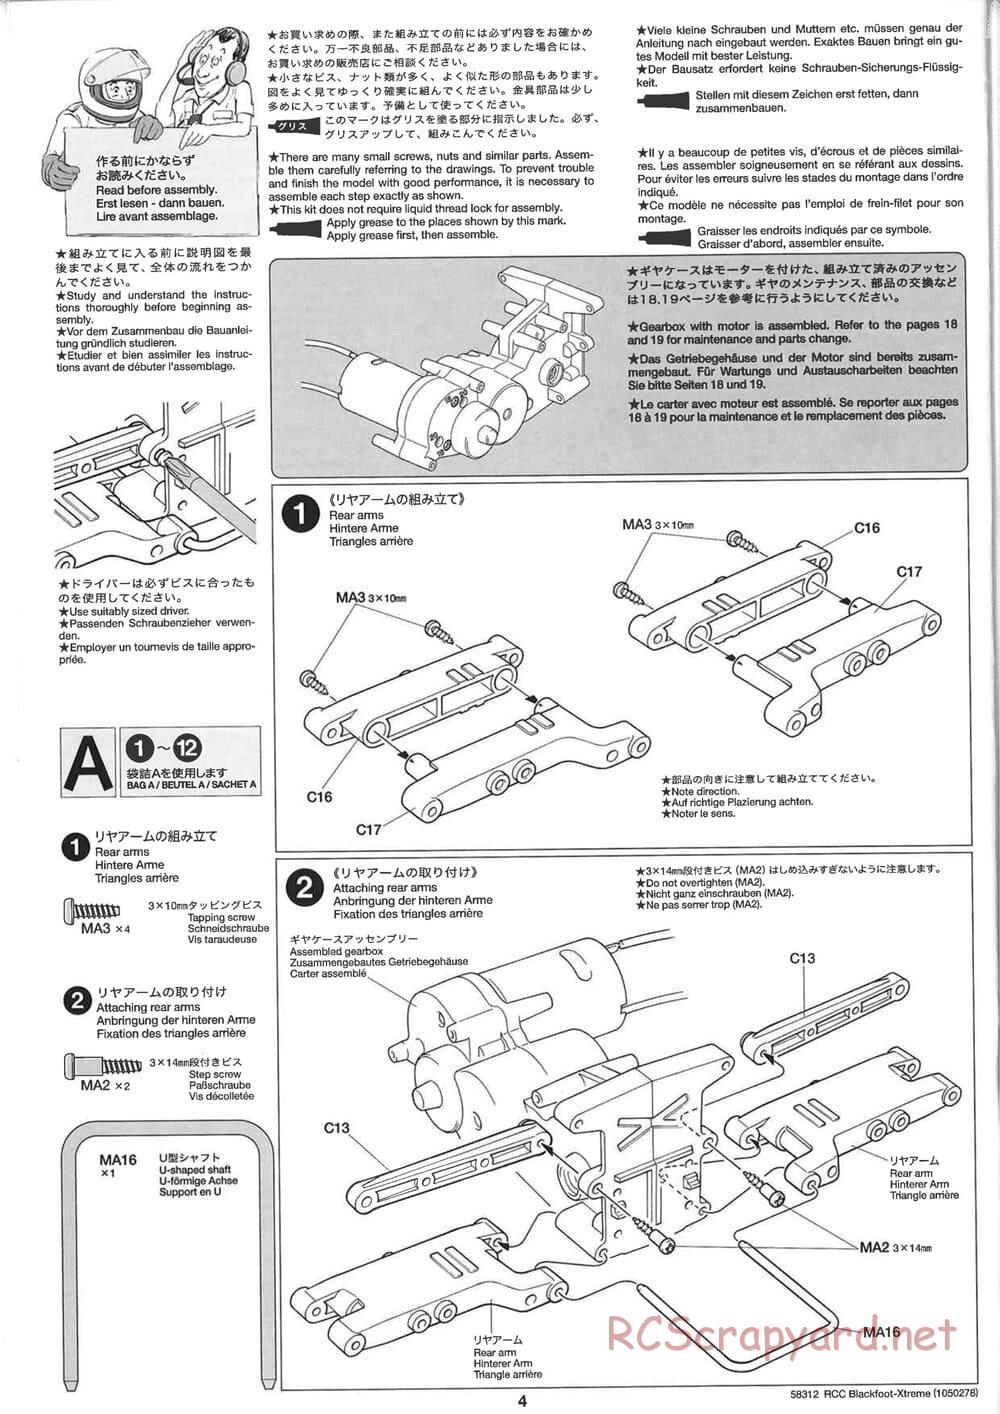 Tamiya - Blackfoot Xtreme - WT-01 Chassis - Manual - Page 4